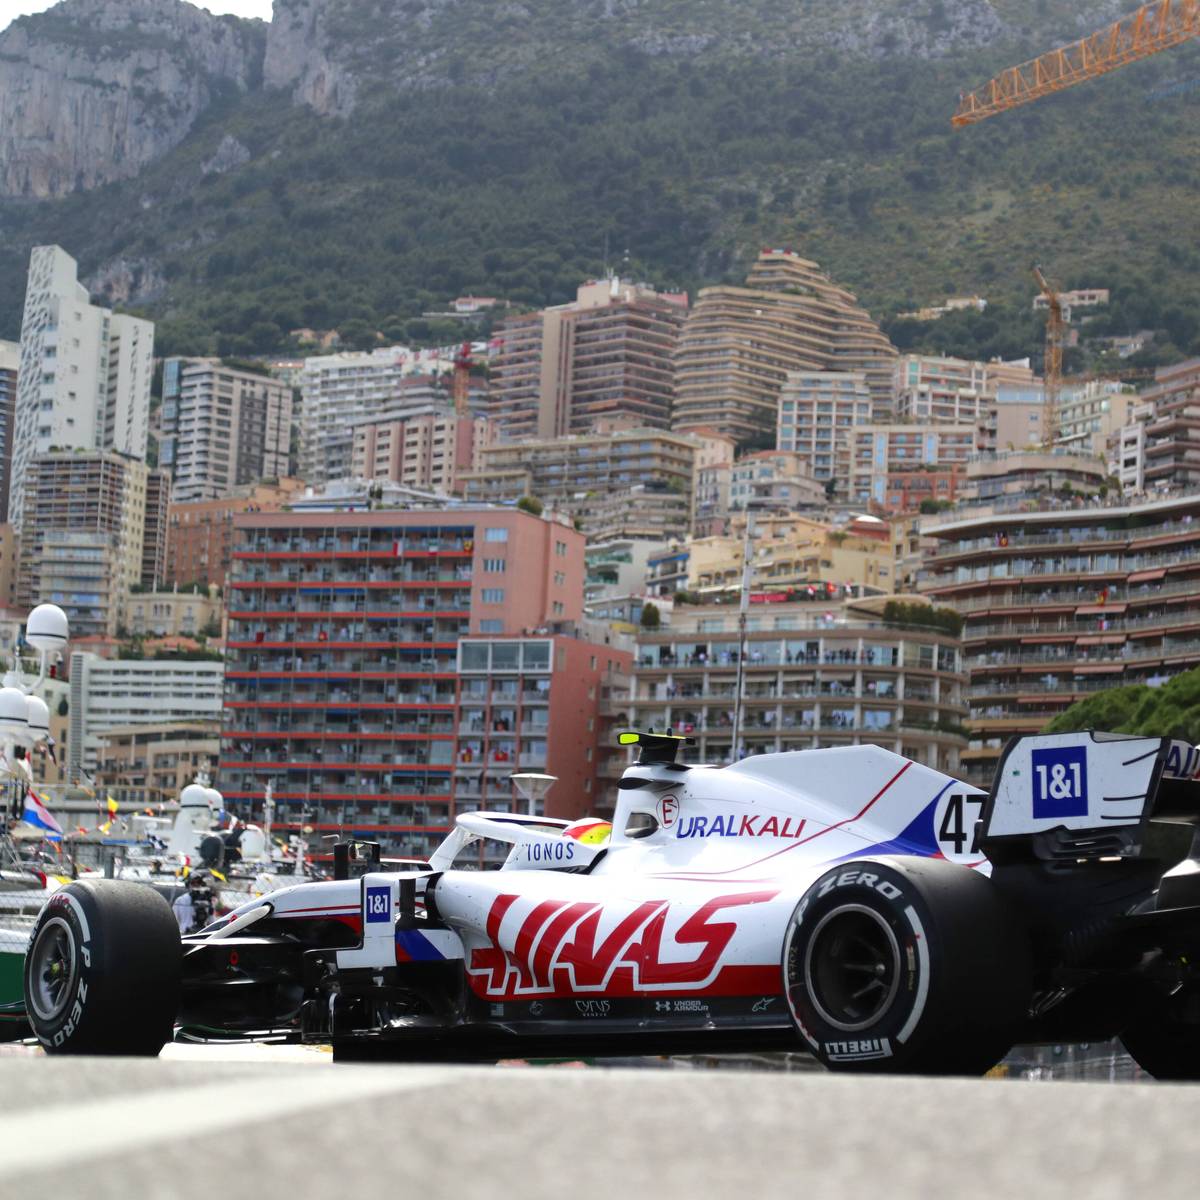 Der Große Preis von Monaco ist das legendärste Rennen Formel 1 - gilt in vielerlei Hinsicht aber als nicht mehr auf der Höhe der Zeit. Die Rennserie erhöht den Veränderungsdruck - geht sie sogar bis zum Äußersten?